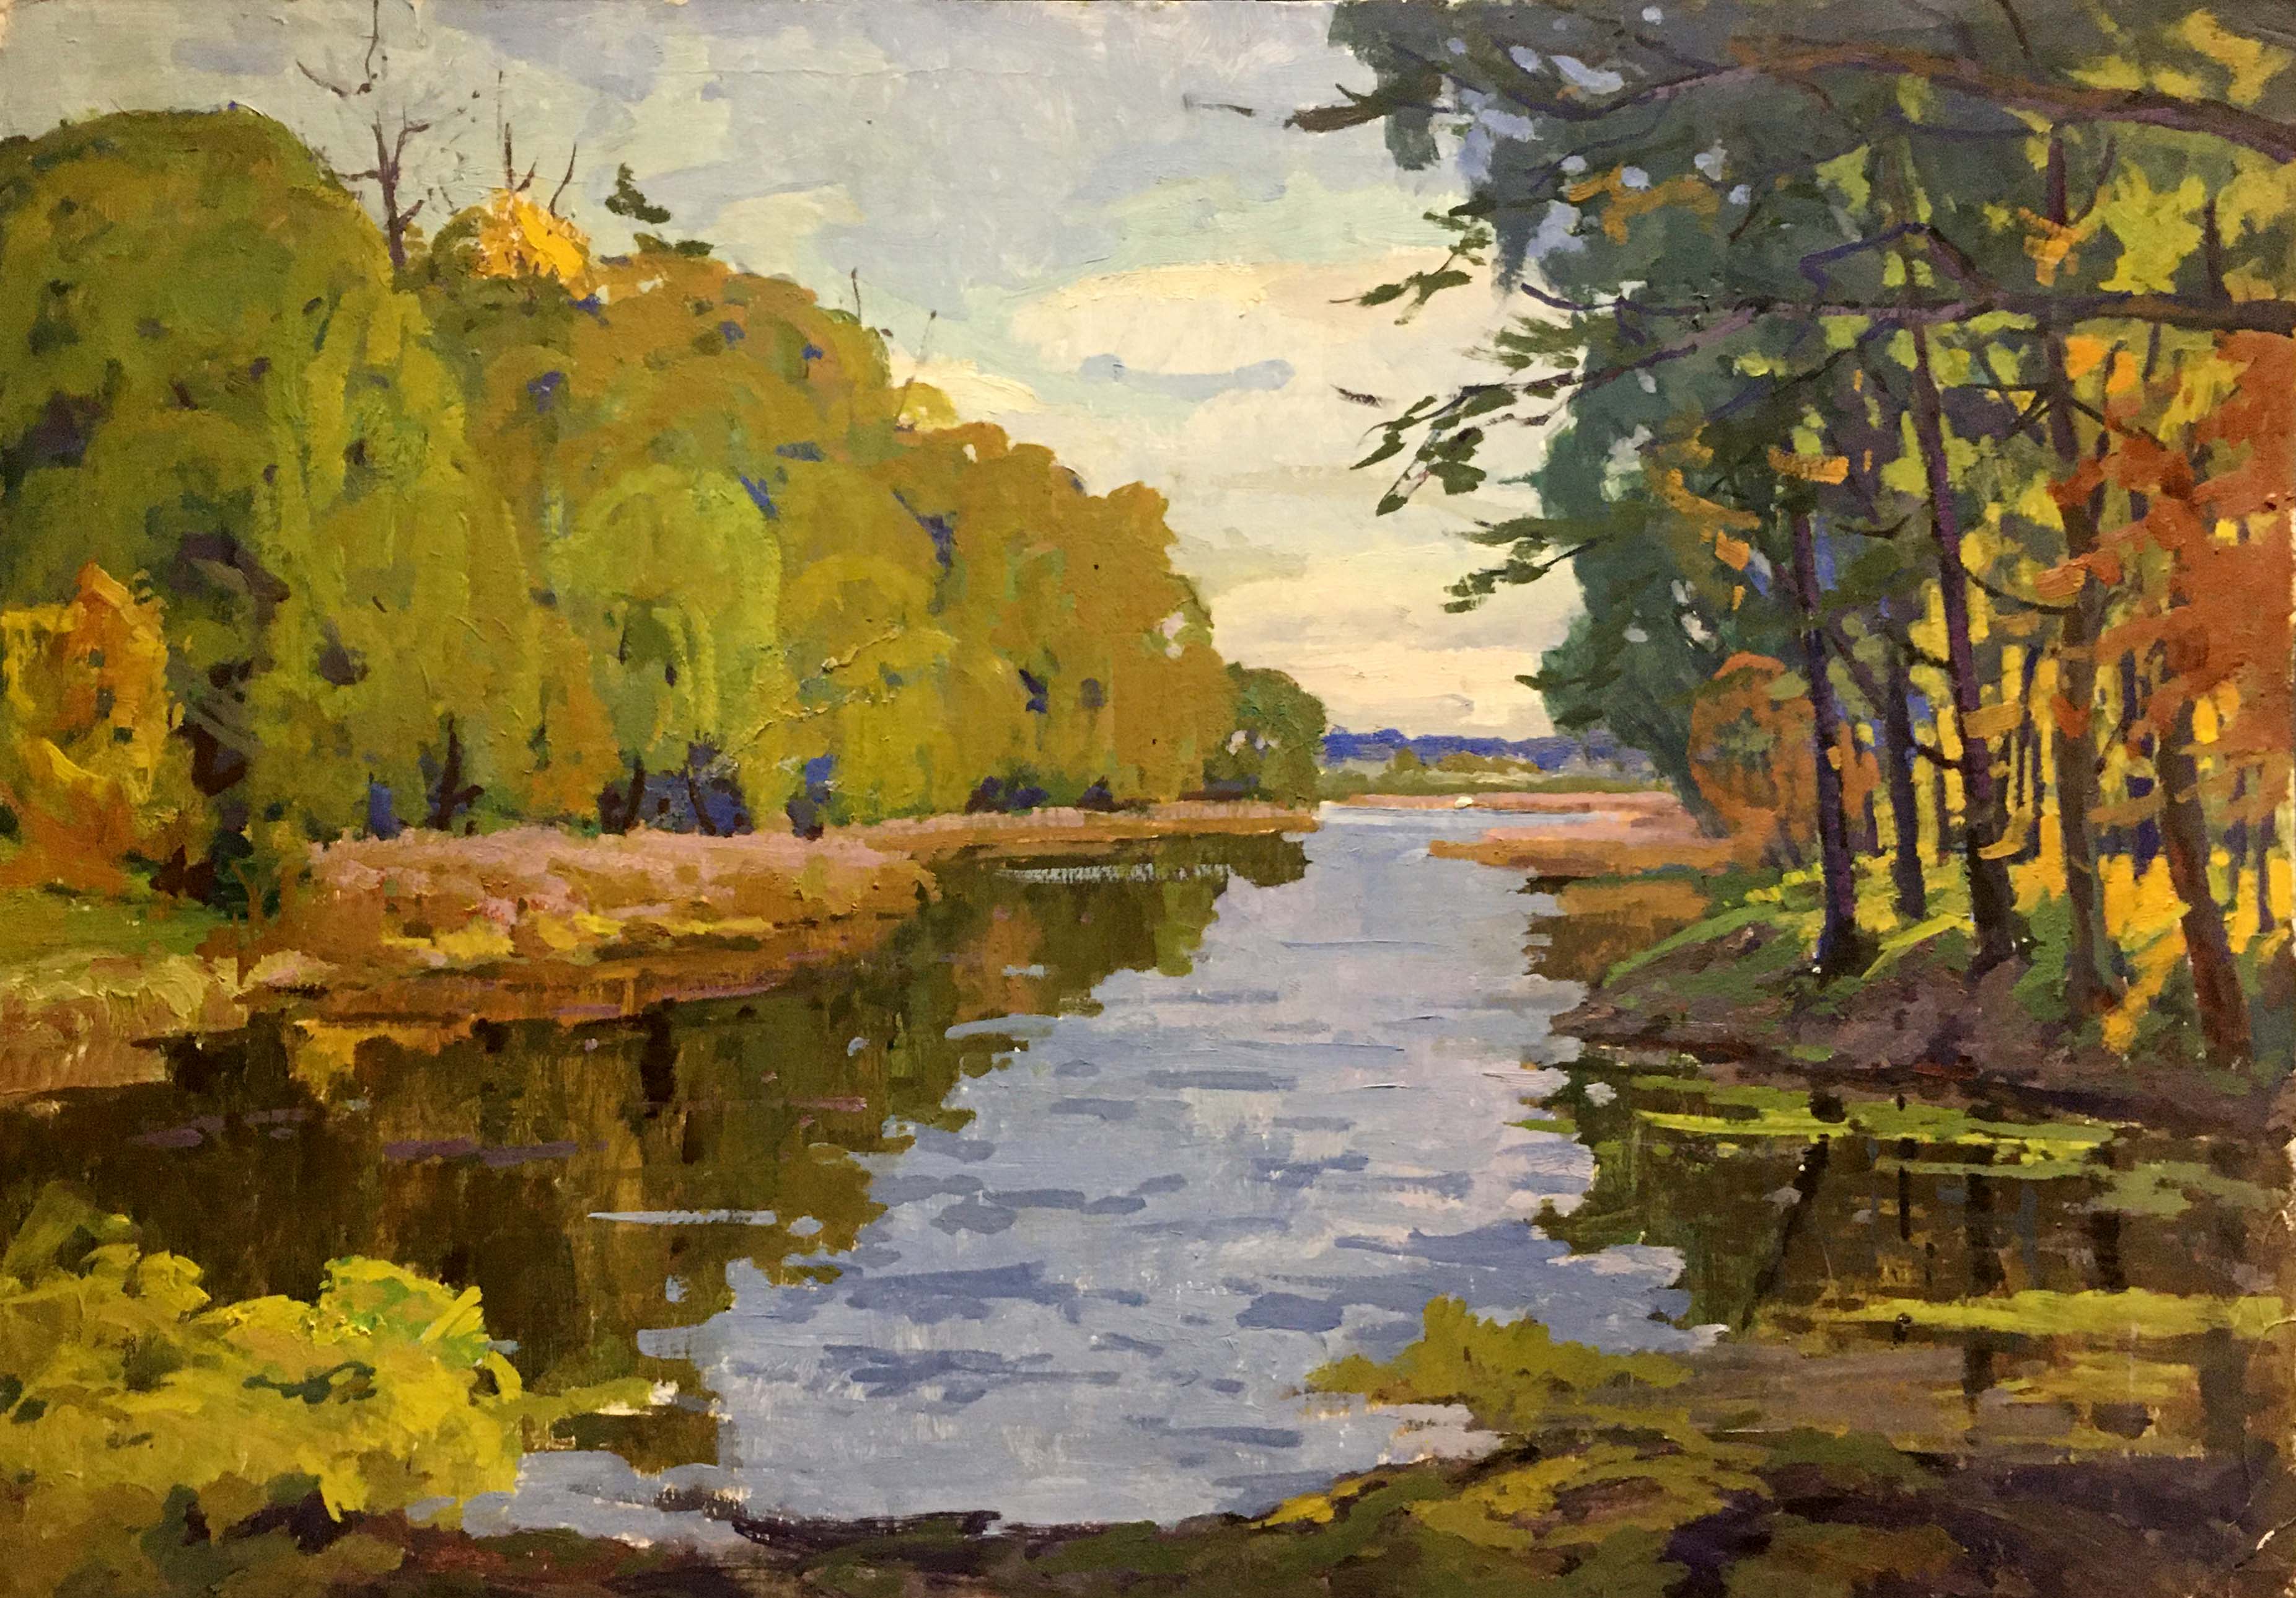 Oil painting River landscape Vladimir Korostelev